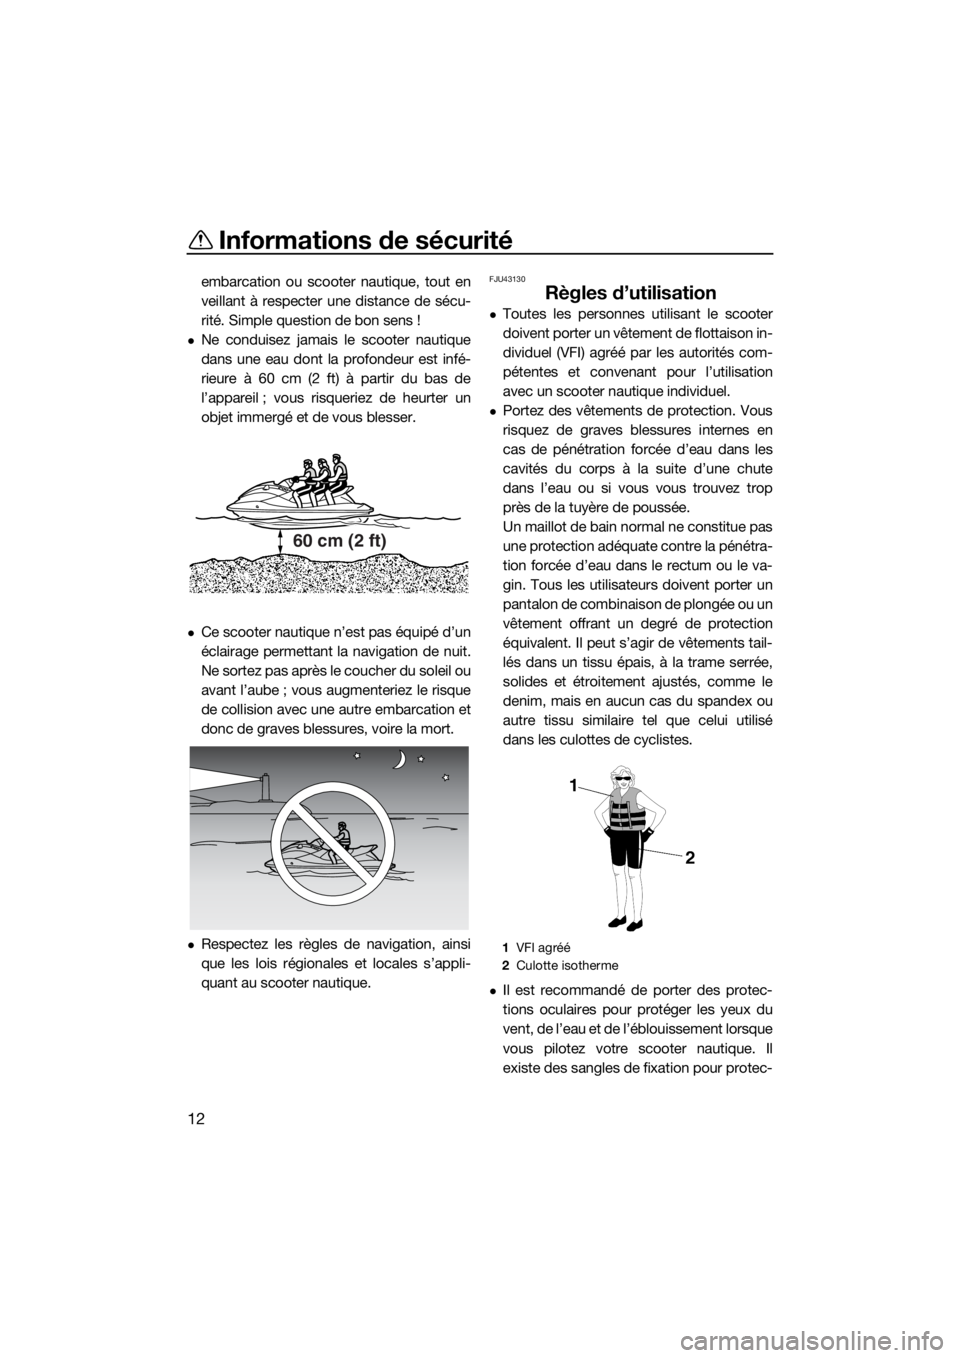 YAMAHA VX LIMITED 2016  Notices Demploi (in French) Informations de sécurité
12
embarcation ou scooter nautique, tout en
veillant à respecter une distance de sécu-
rité. Simple question de bon sens !
Ne conduisez jamais le scooter nautique
dans